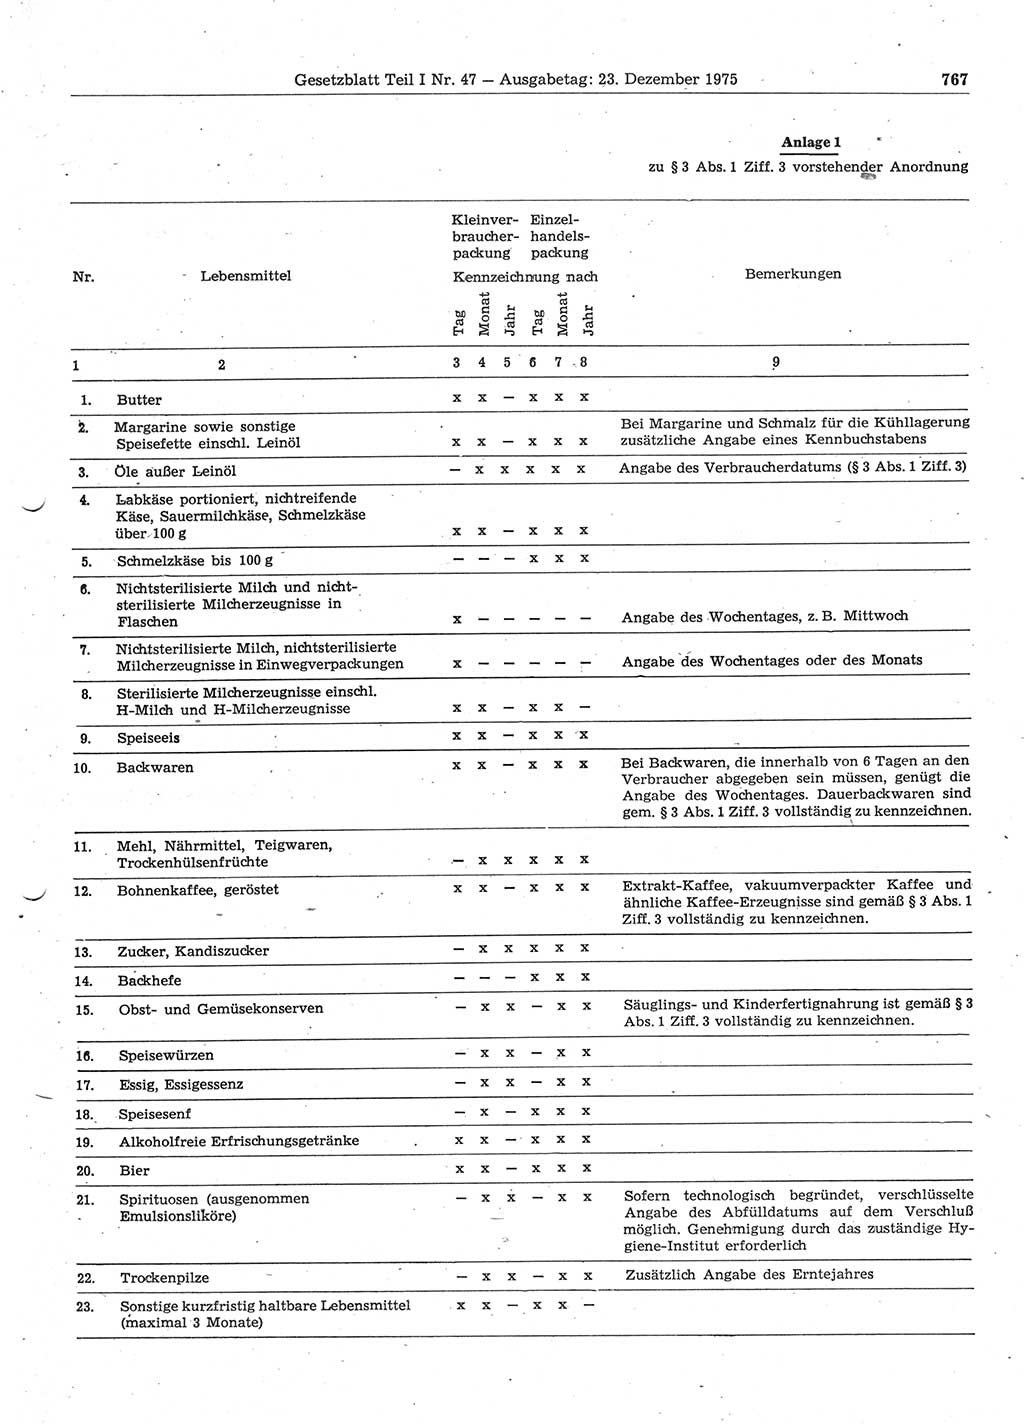 Gesetzblatt (GBl.) der Deutschen Demokratischen Republik (DDR) Teil Ⅰ 1975, Seite 767 (GBl. DDR Ⅰ 1975, S. 767)